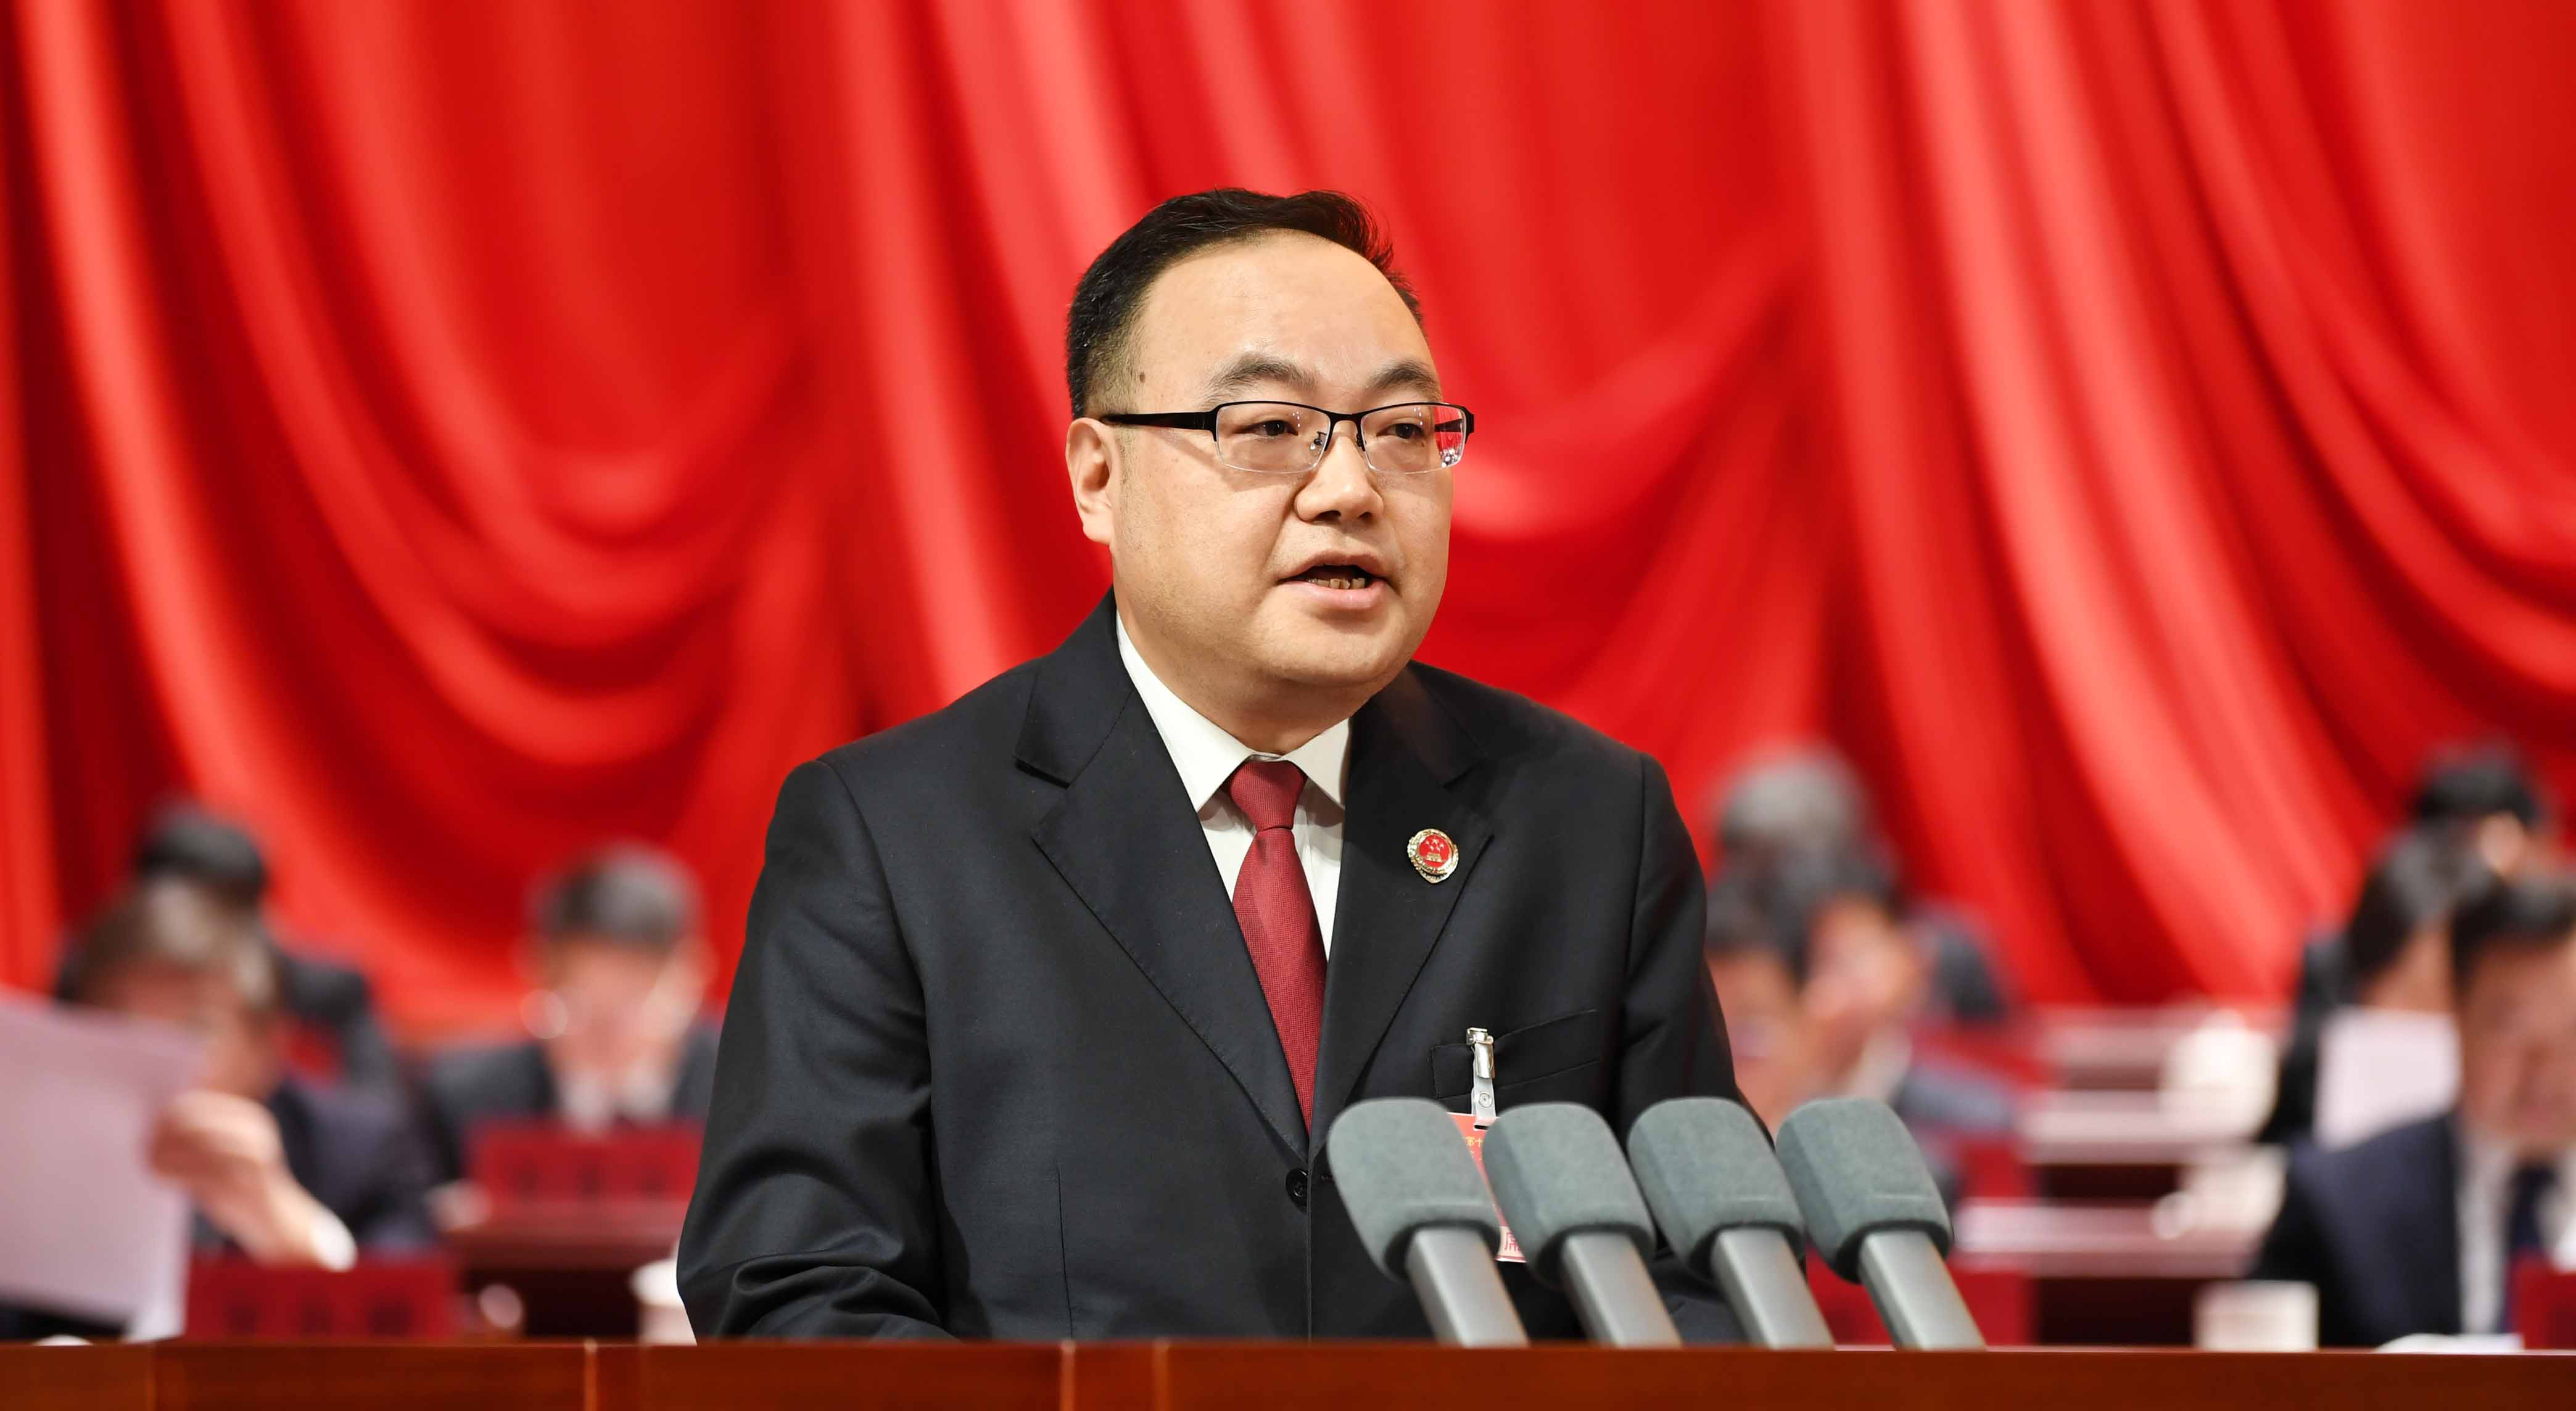 彭胜坤检察长向武汉市人民代表大会作工作报告（带您一图读懂报告要点）